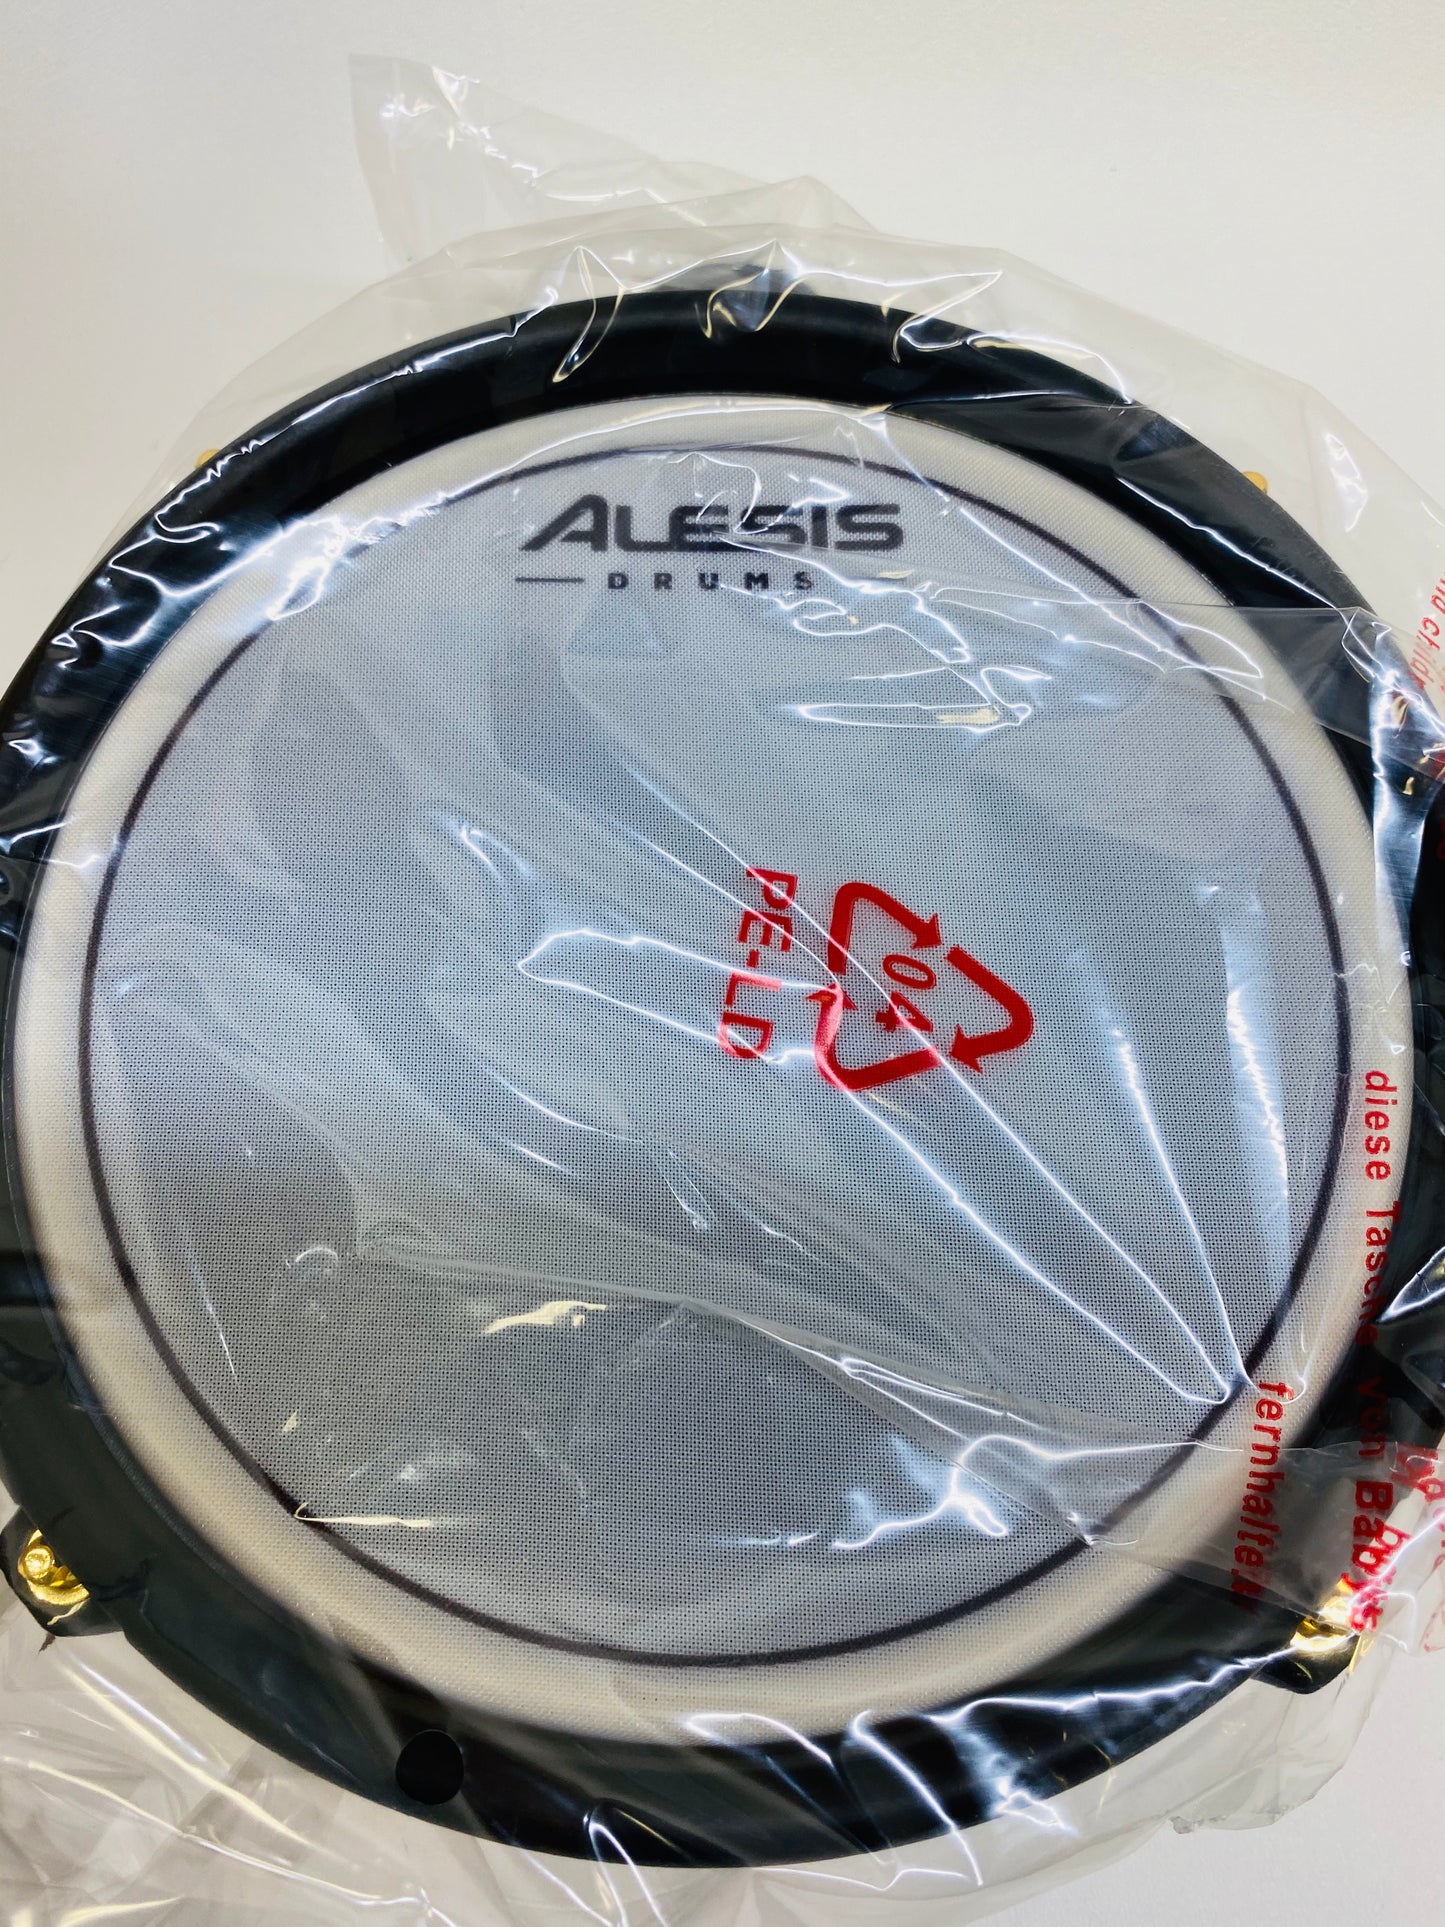 Alesis Strike Pro SE 8” Mesh Drum Pad OPEN BOX